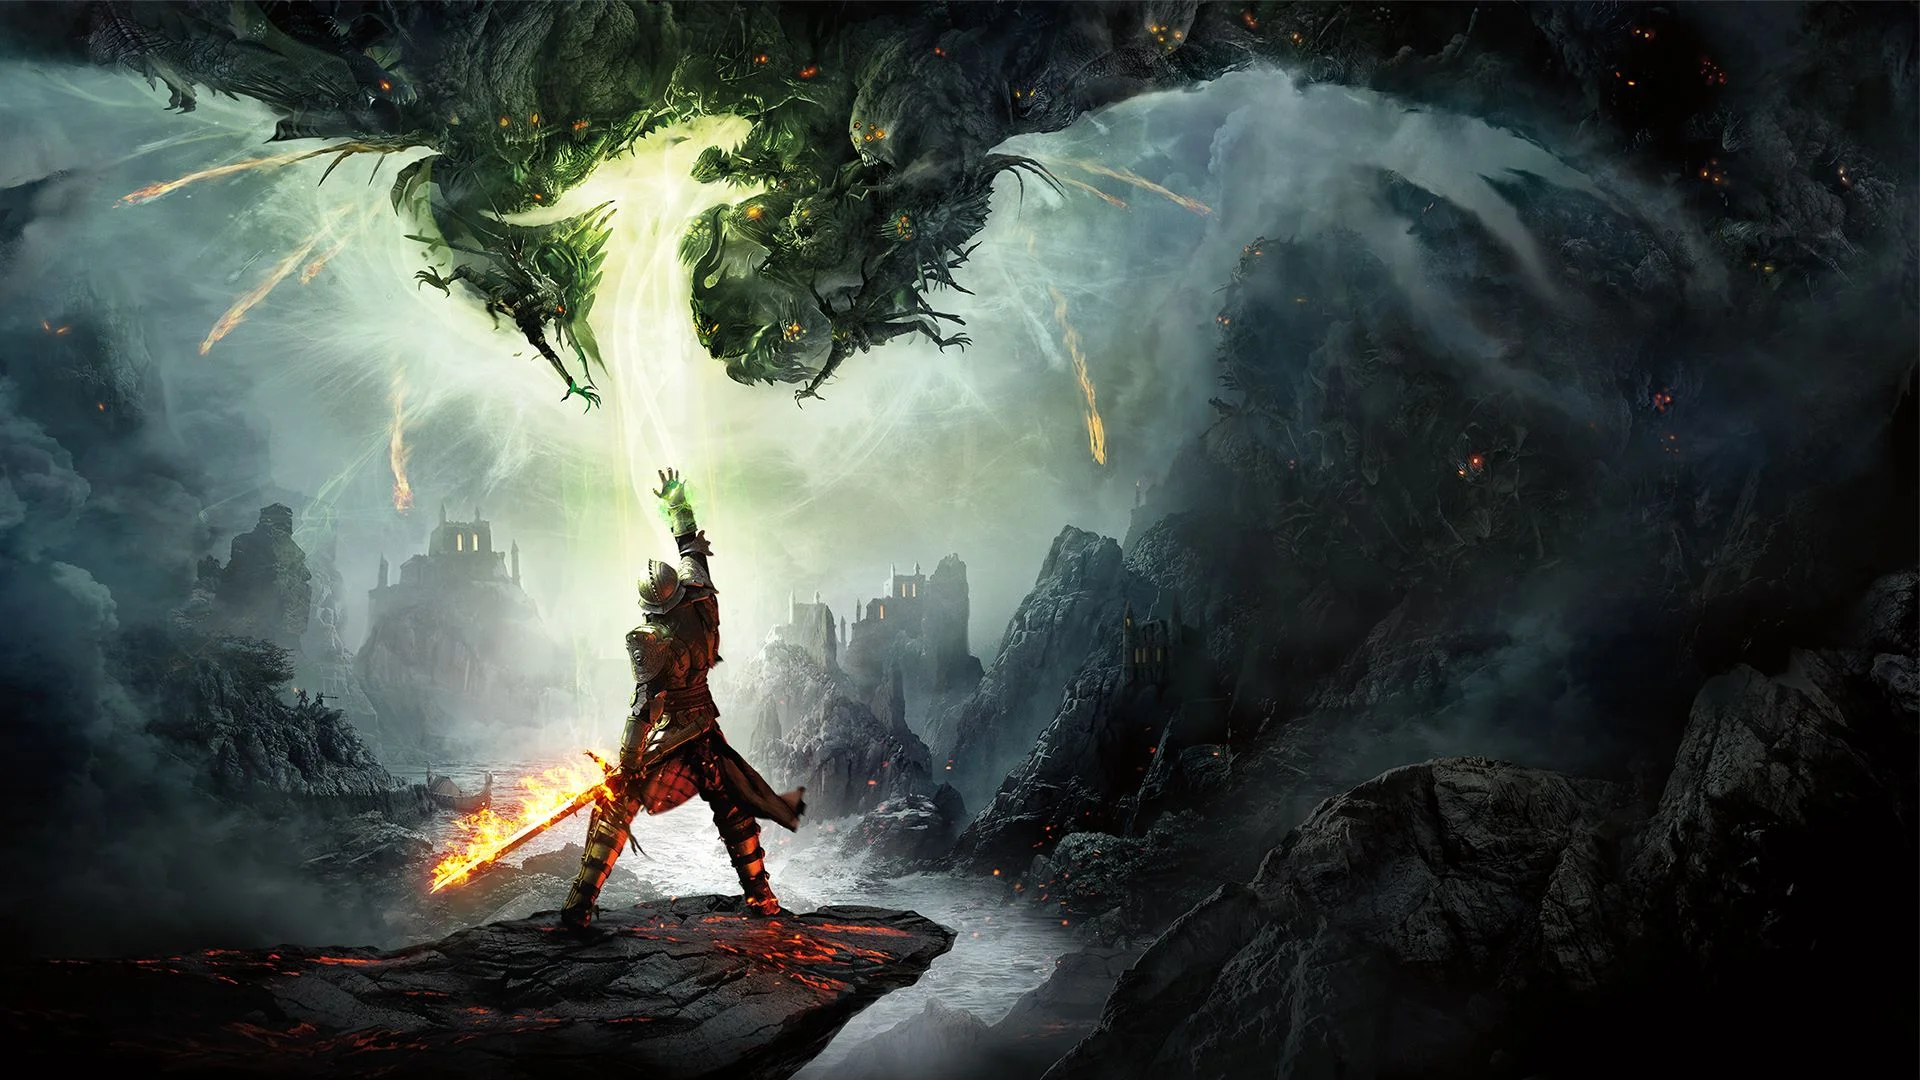 СМИ: BioWare решила показать тизер Dragon Age 4 на TGA 2018 без одобрения EA - фото 1